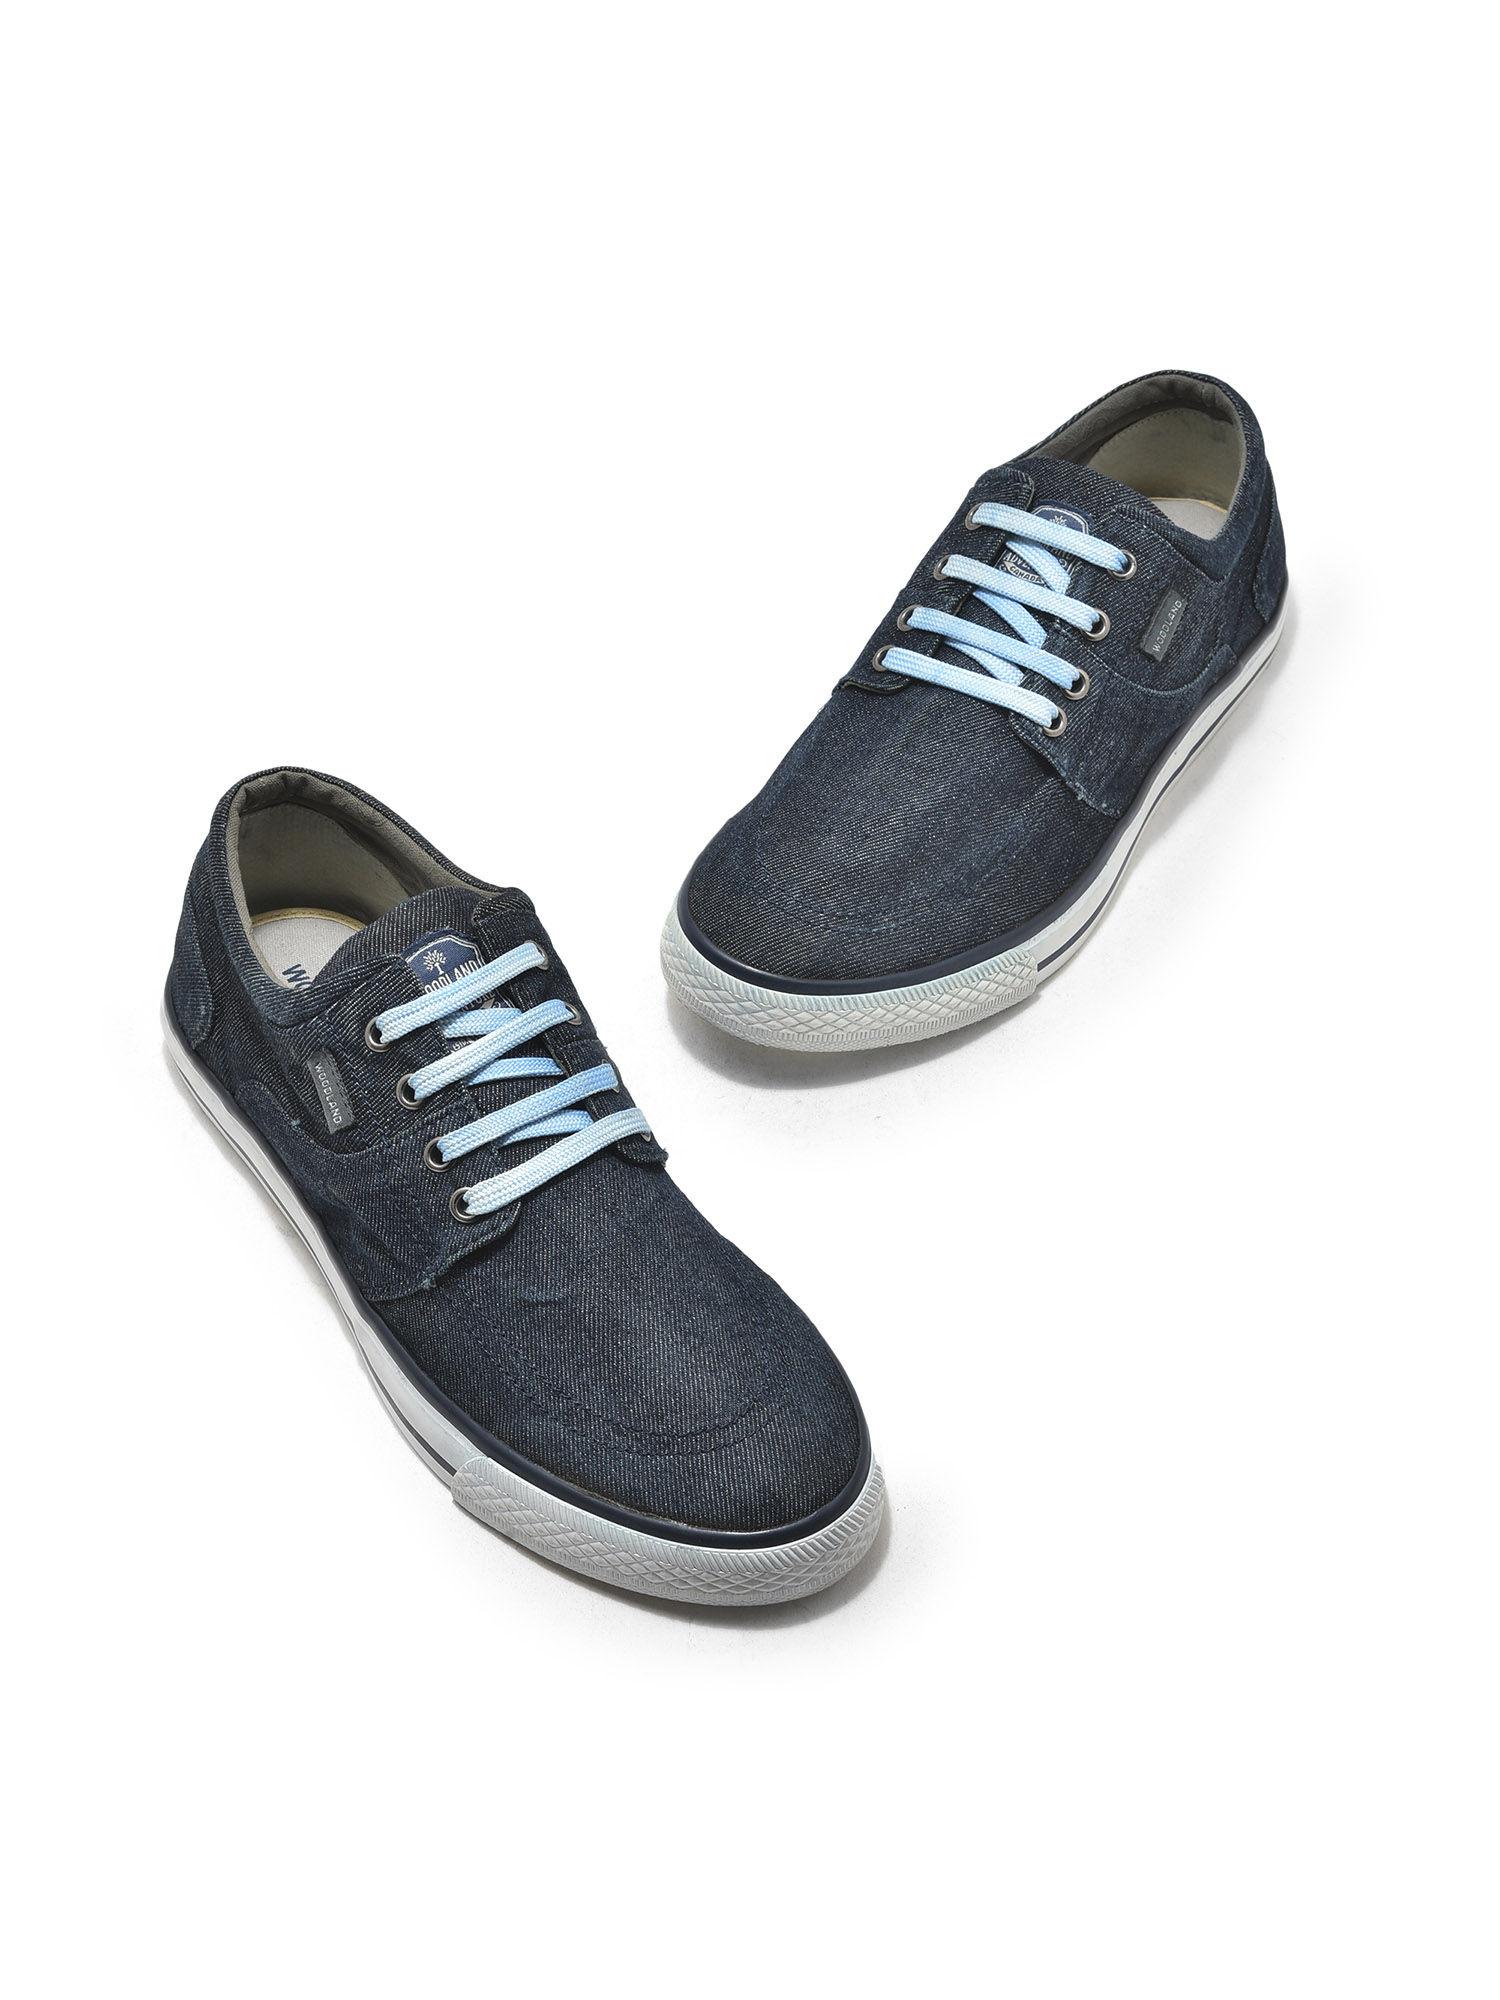 denim-blue-canvas-shoes